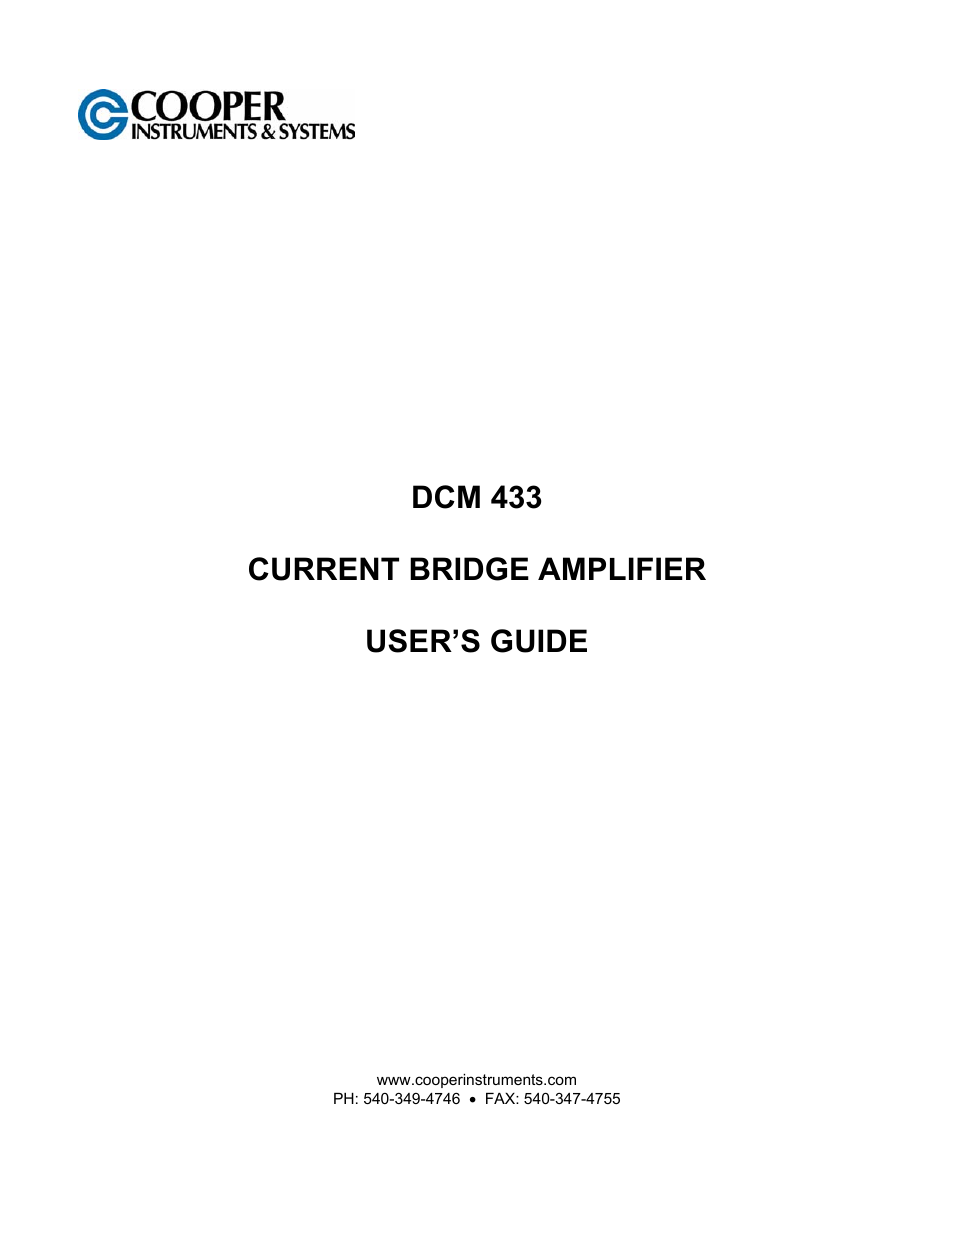 DCM 433 Current Bridge Amplifier